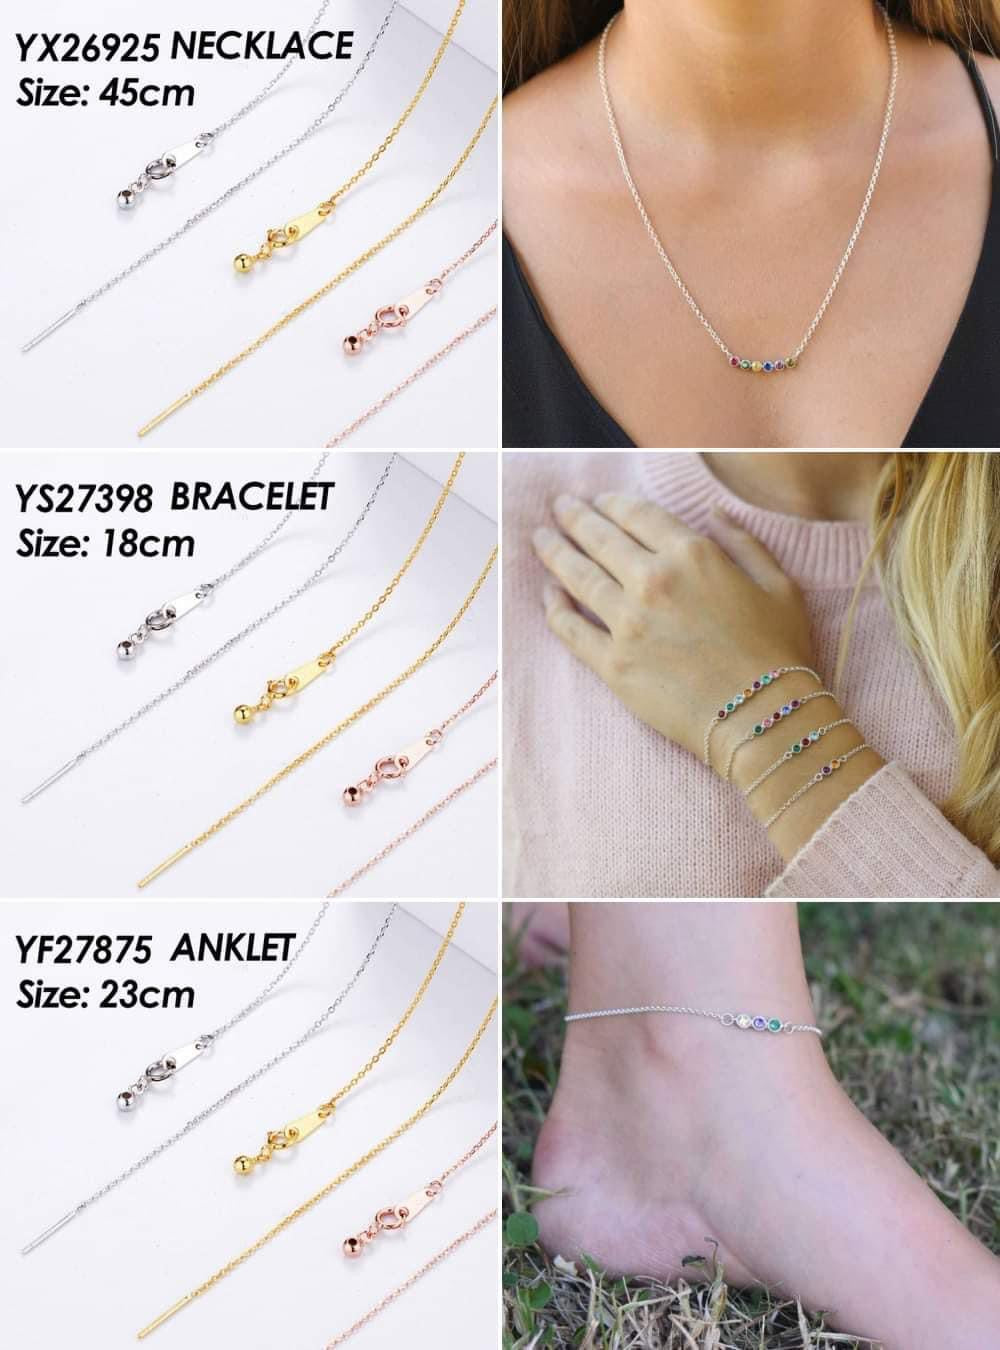 Necklace, Bracelet, or Anklet